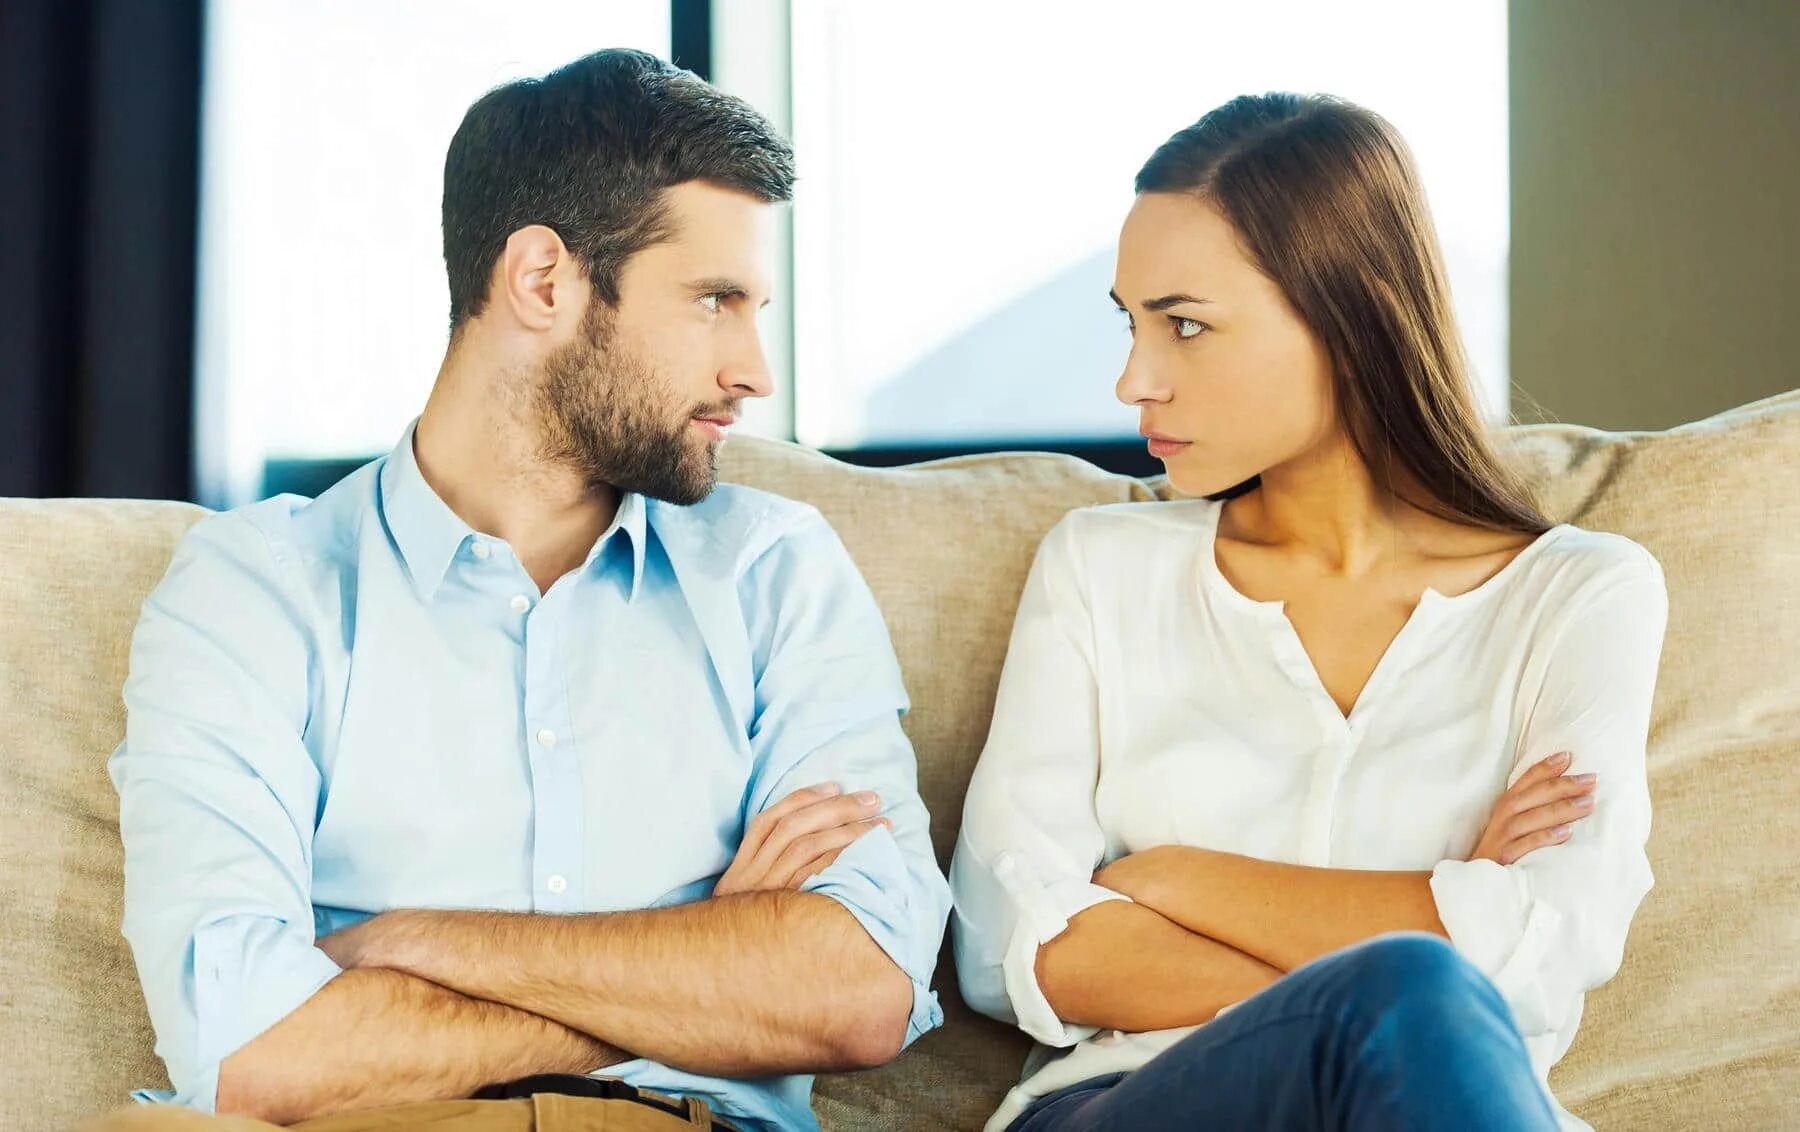 Ревность купить. Общение между мужчиной и женщиной. Разговор между мужем и женой. Компромисс в отношениях. Разговор между мужчиной и женщиной.